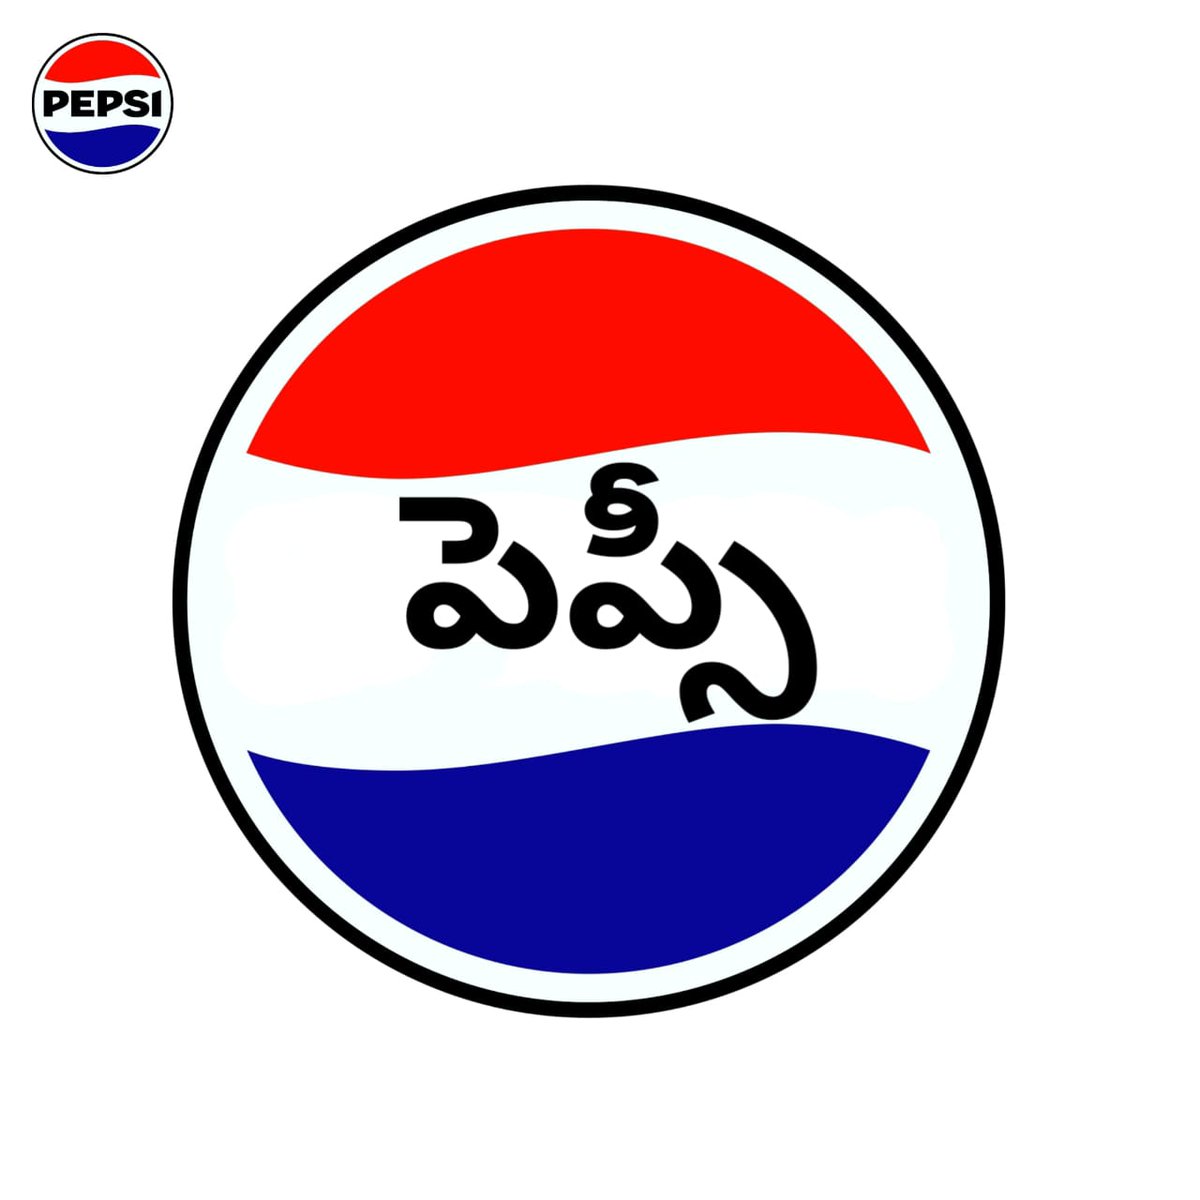 పెప్సీ లోగో తెలుగులో Telugu Logo Series 1 - Pepsi @pepsi @PepsiCo @pepsicoindia #pepsi #తెలుగు #Telugu